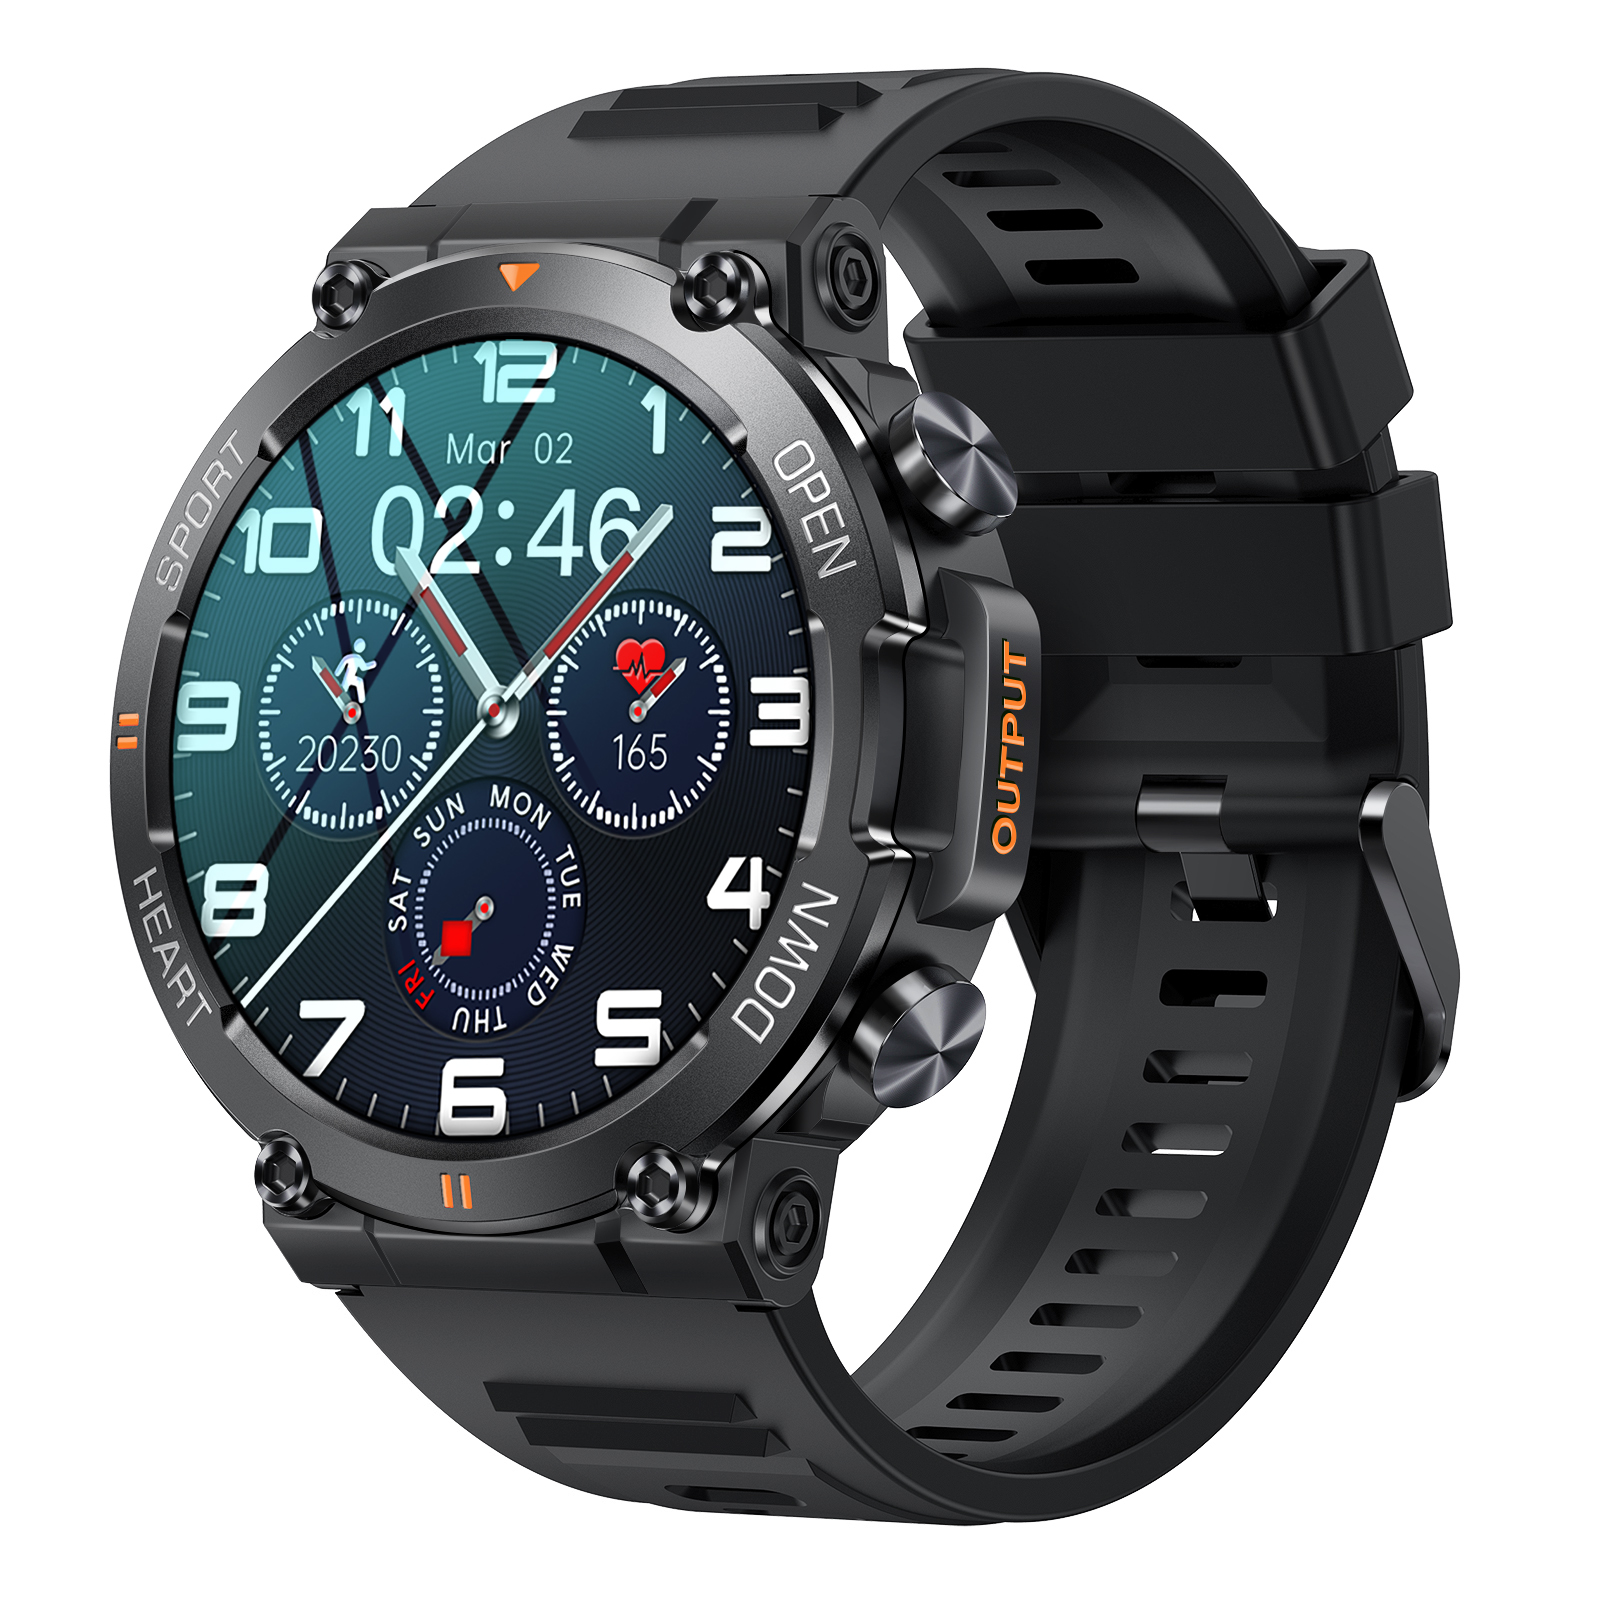 Смарт-часы Lemfo K56 PRO c bluetooth звонком черный (K56_Pro), купить в Москве, цены в интернет-магазинах на Мегамаркет